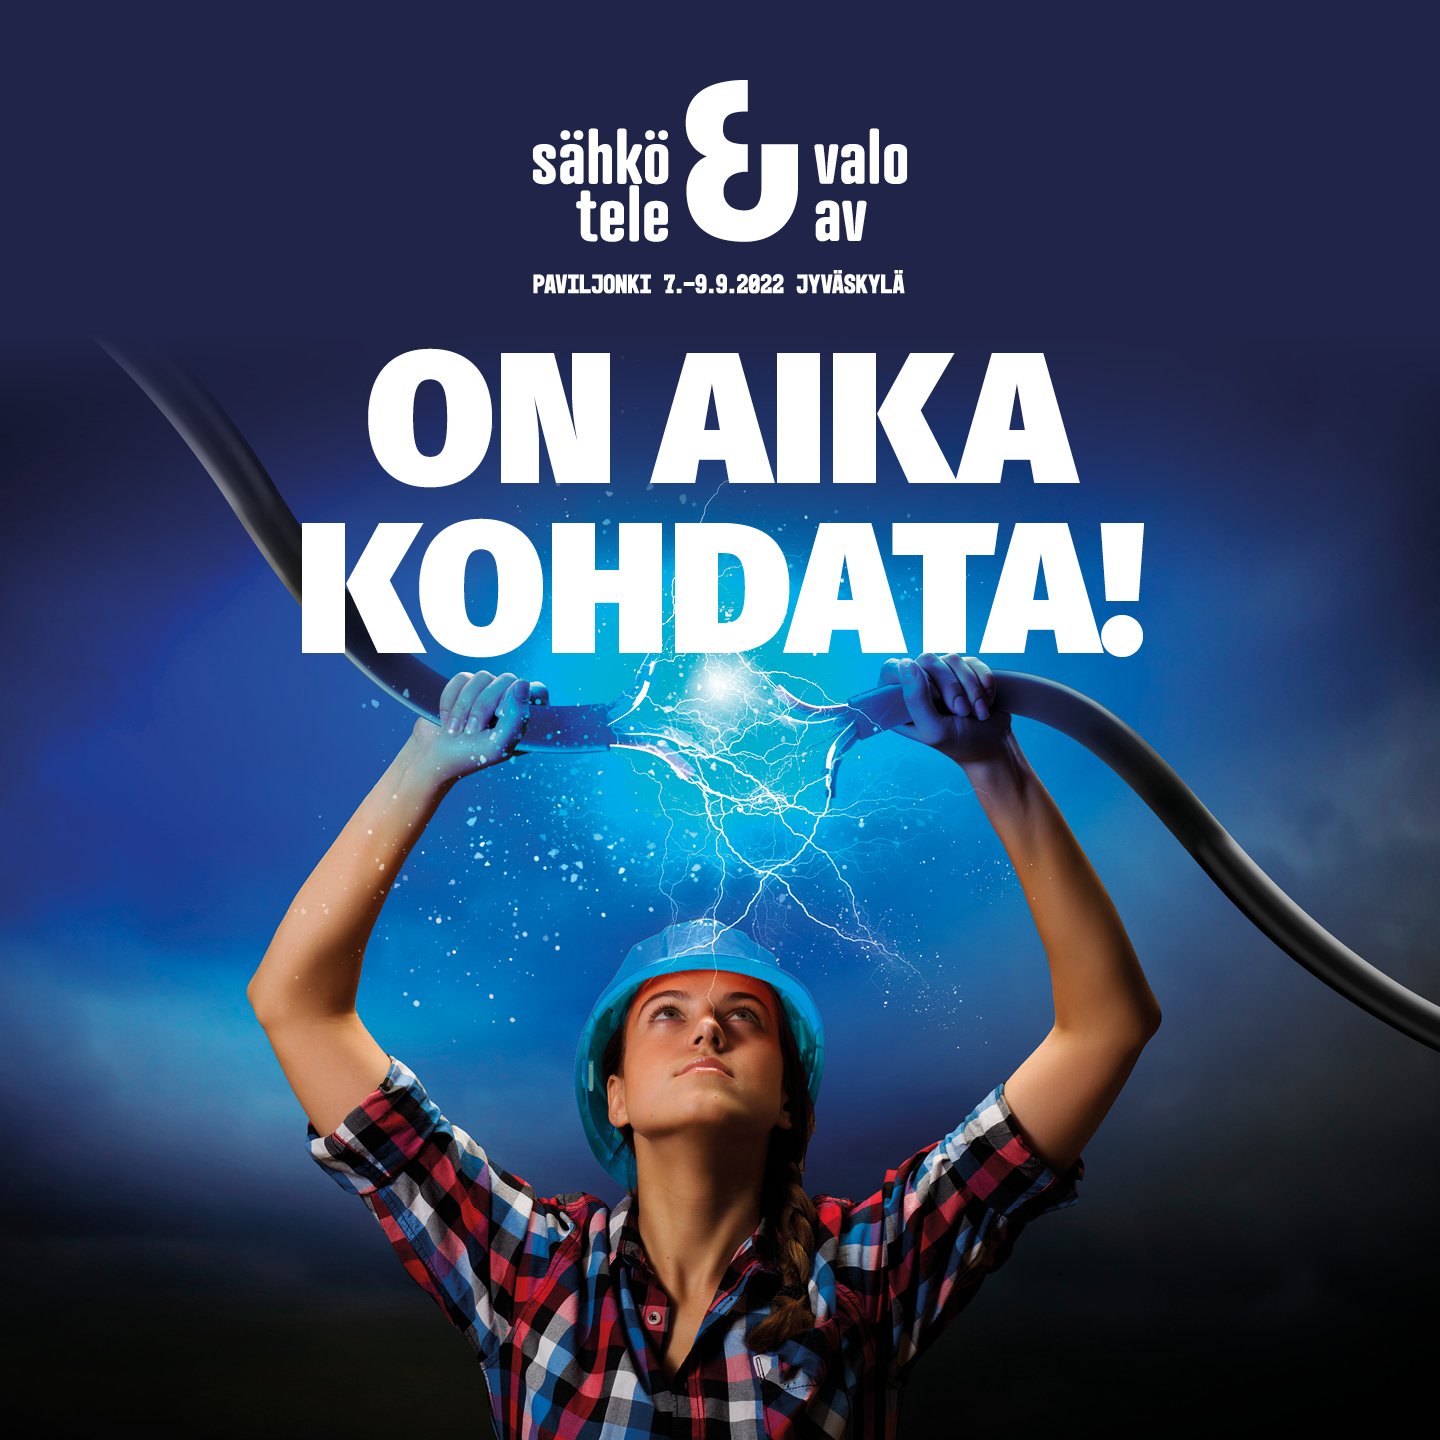 We are participating in the Sähkö Valo Tele Av fair in Jyväskylä on 7.-9.9.2022.